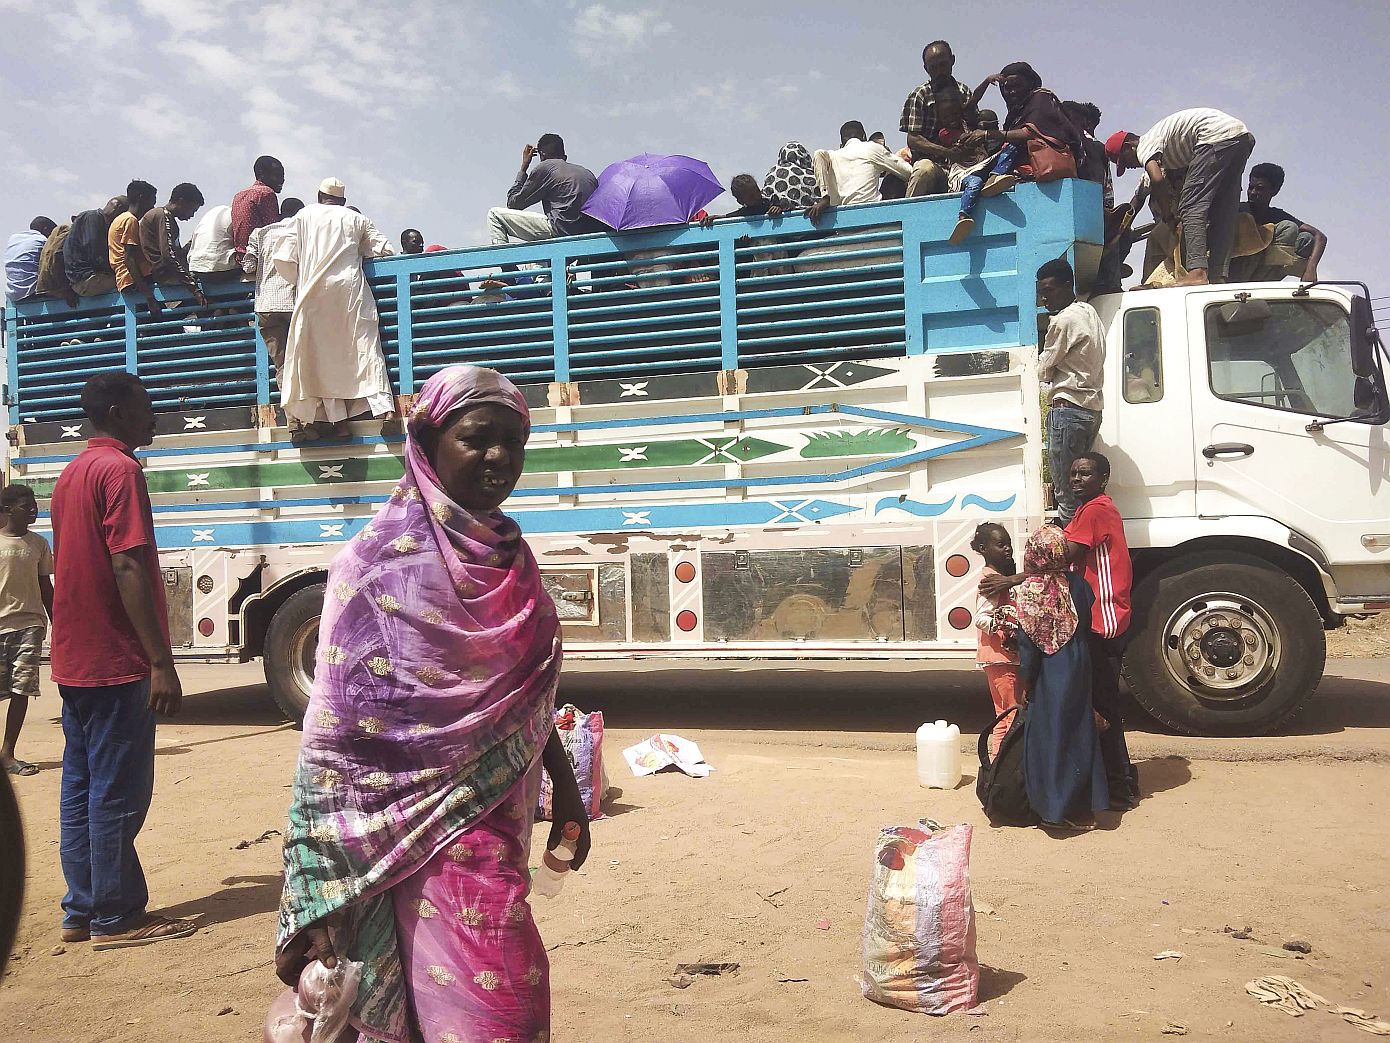 Σε κατάσταση διατροφικής ανασφάλειας πέντε εκατομμύρια άνθρωποι στον Σουδάν